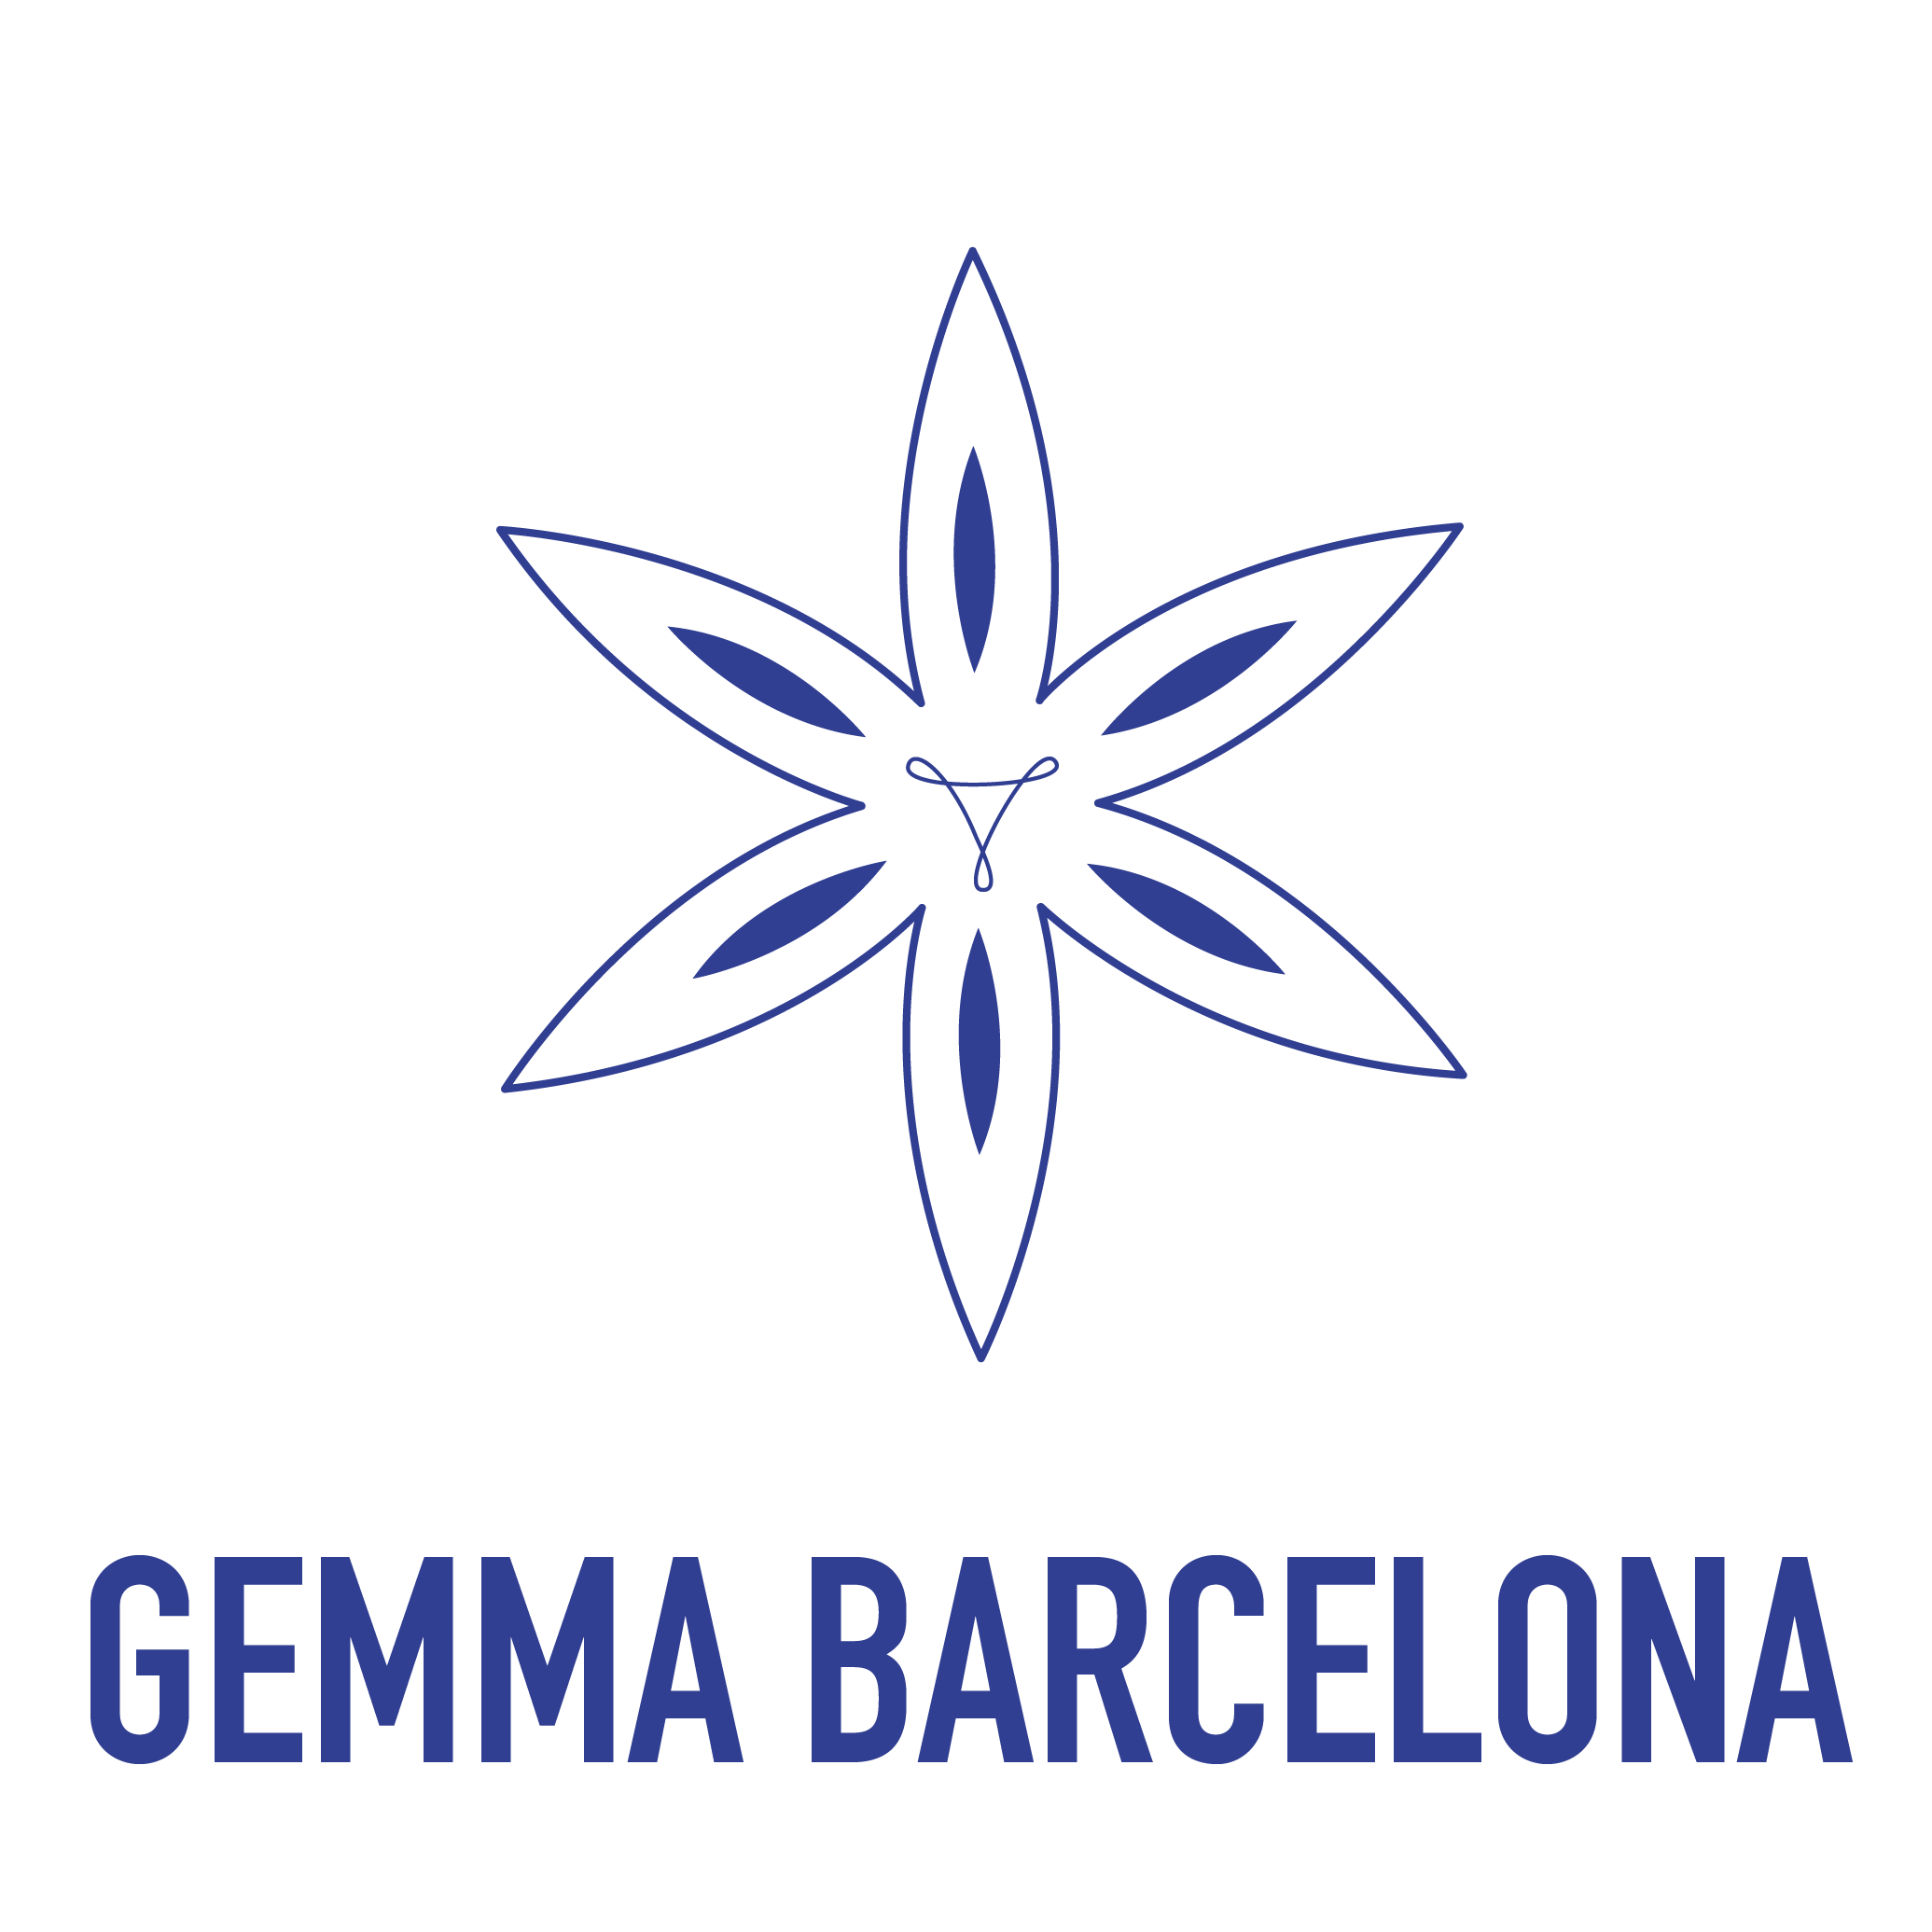 Gemma Barcelona